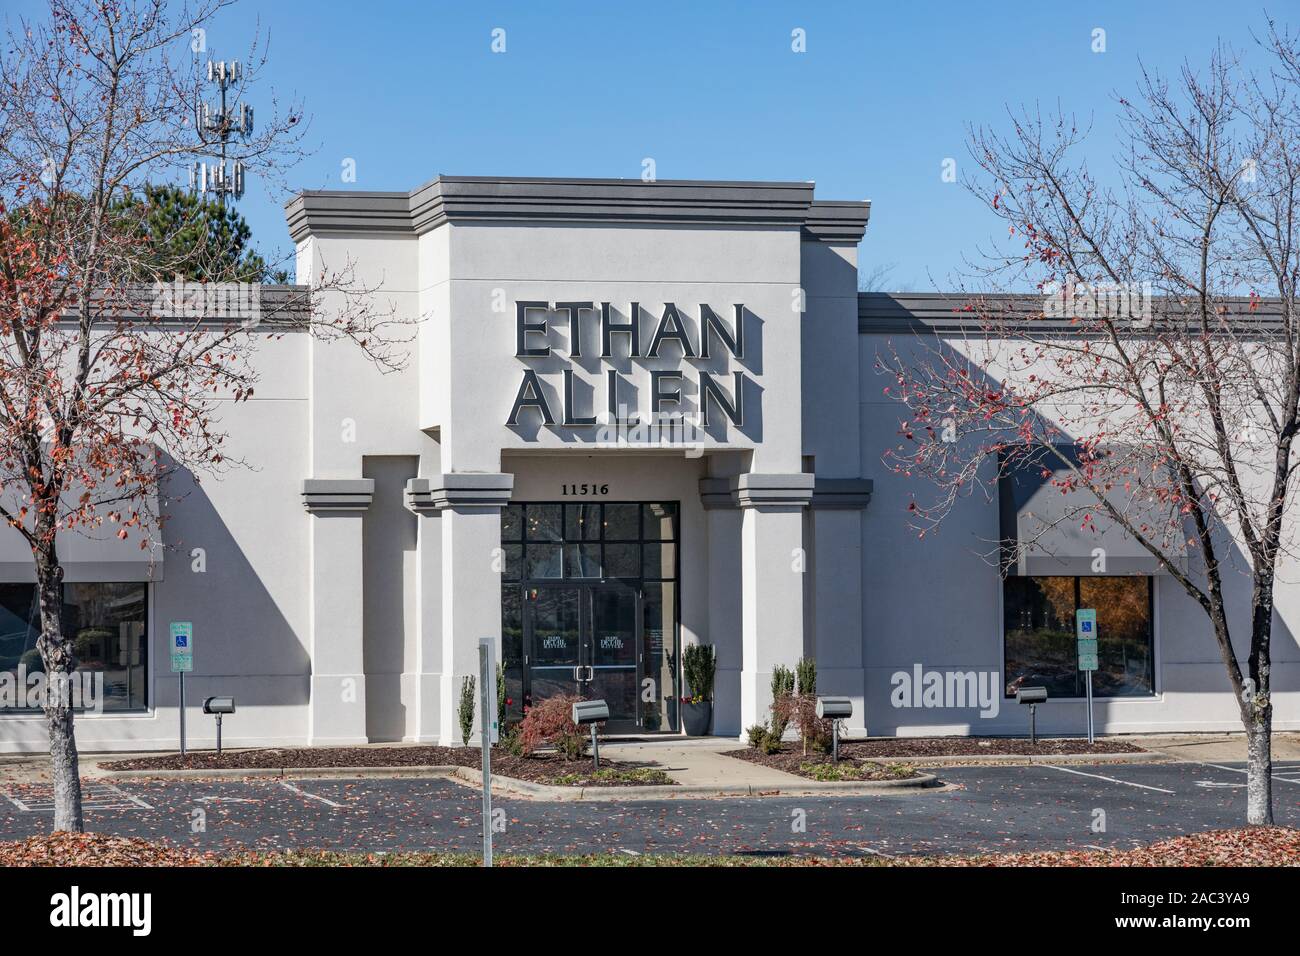 Charlotte, NC, USA-24 Nov 2019: Ein Ethan Allen store Front, Teil eines amerikanischen Möbelhaus Kette mit mehr als 300 Filialen. Stockfoto